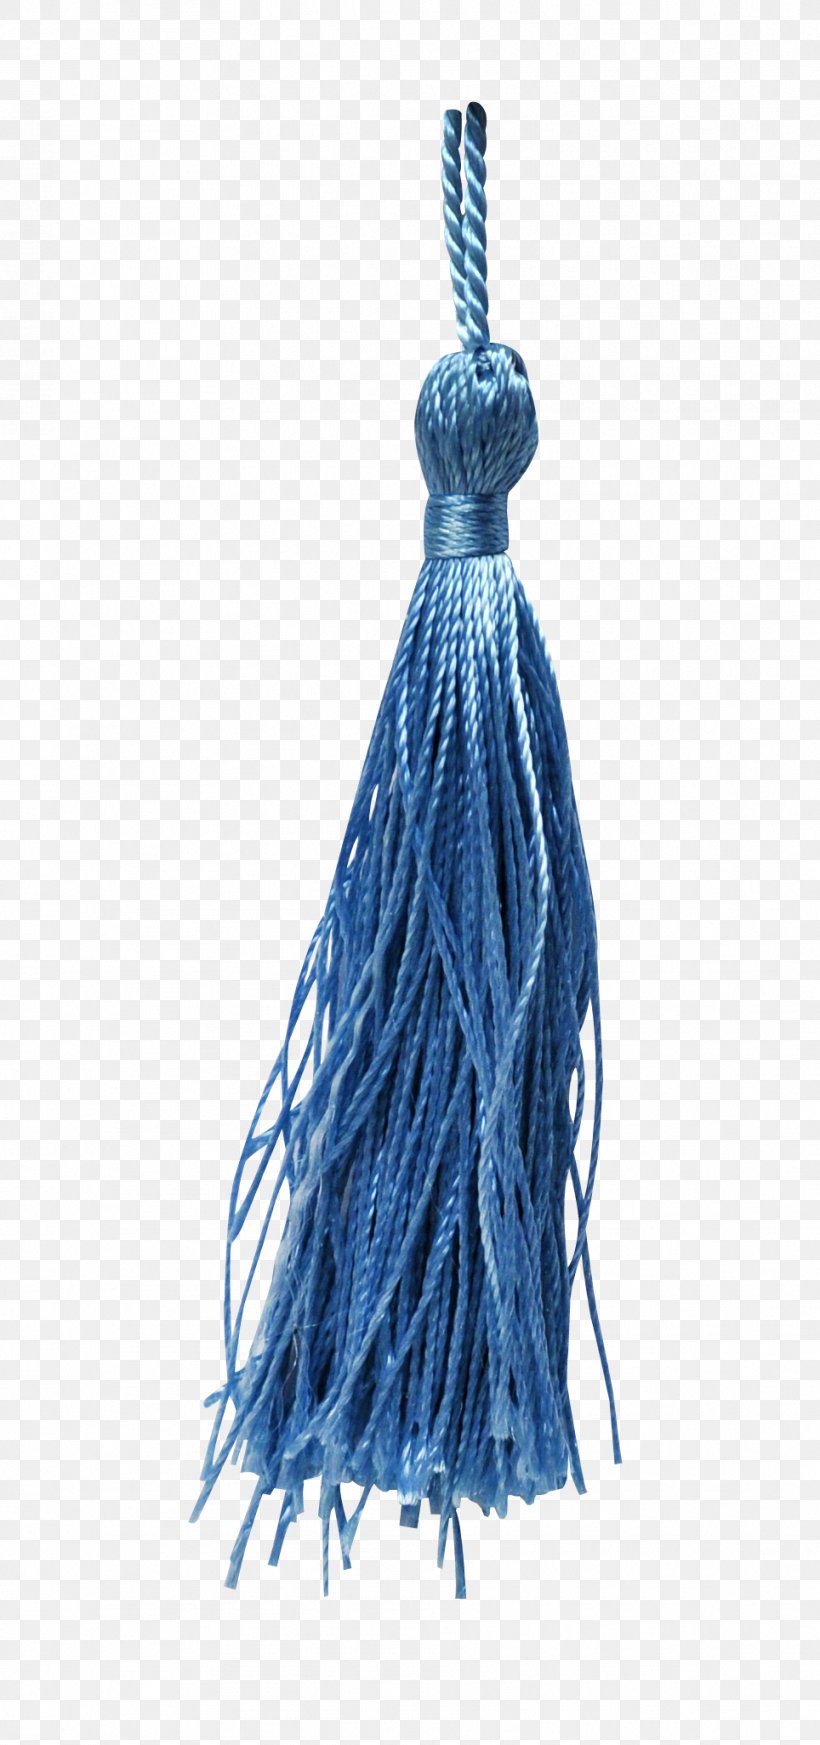 Blue Chinesischer Knoten, PNG, 964x2052px, Blue, Blue Ribbon, Chinesischer Knoten, Color, Electric Blue Download Free